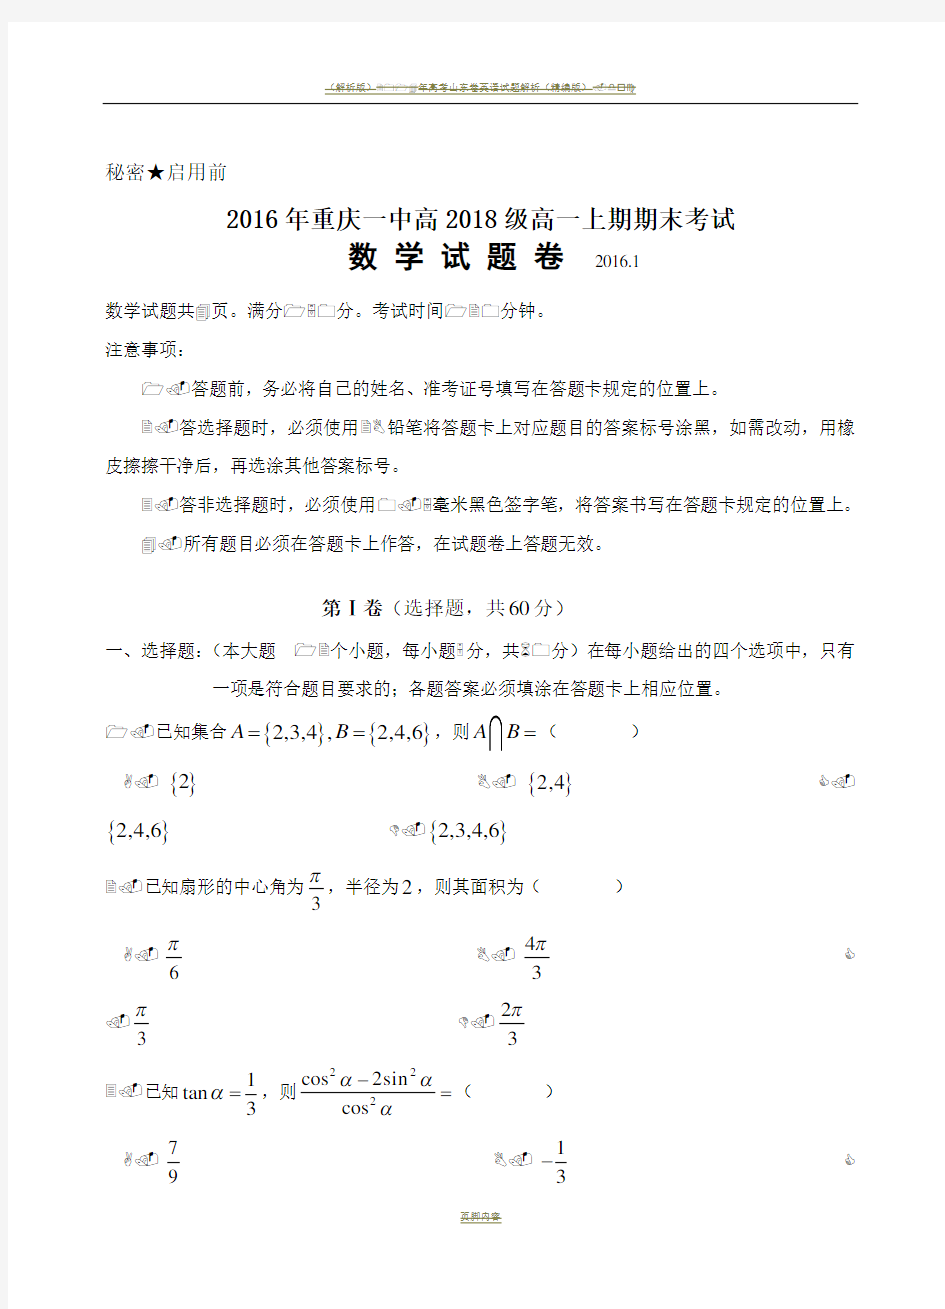 2016年重庆一中高2018级高一上期期末考试数学试卷、答案